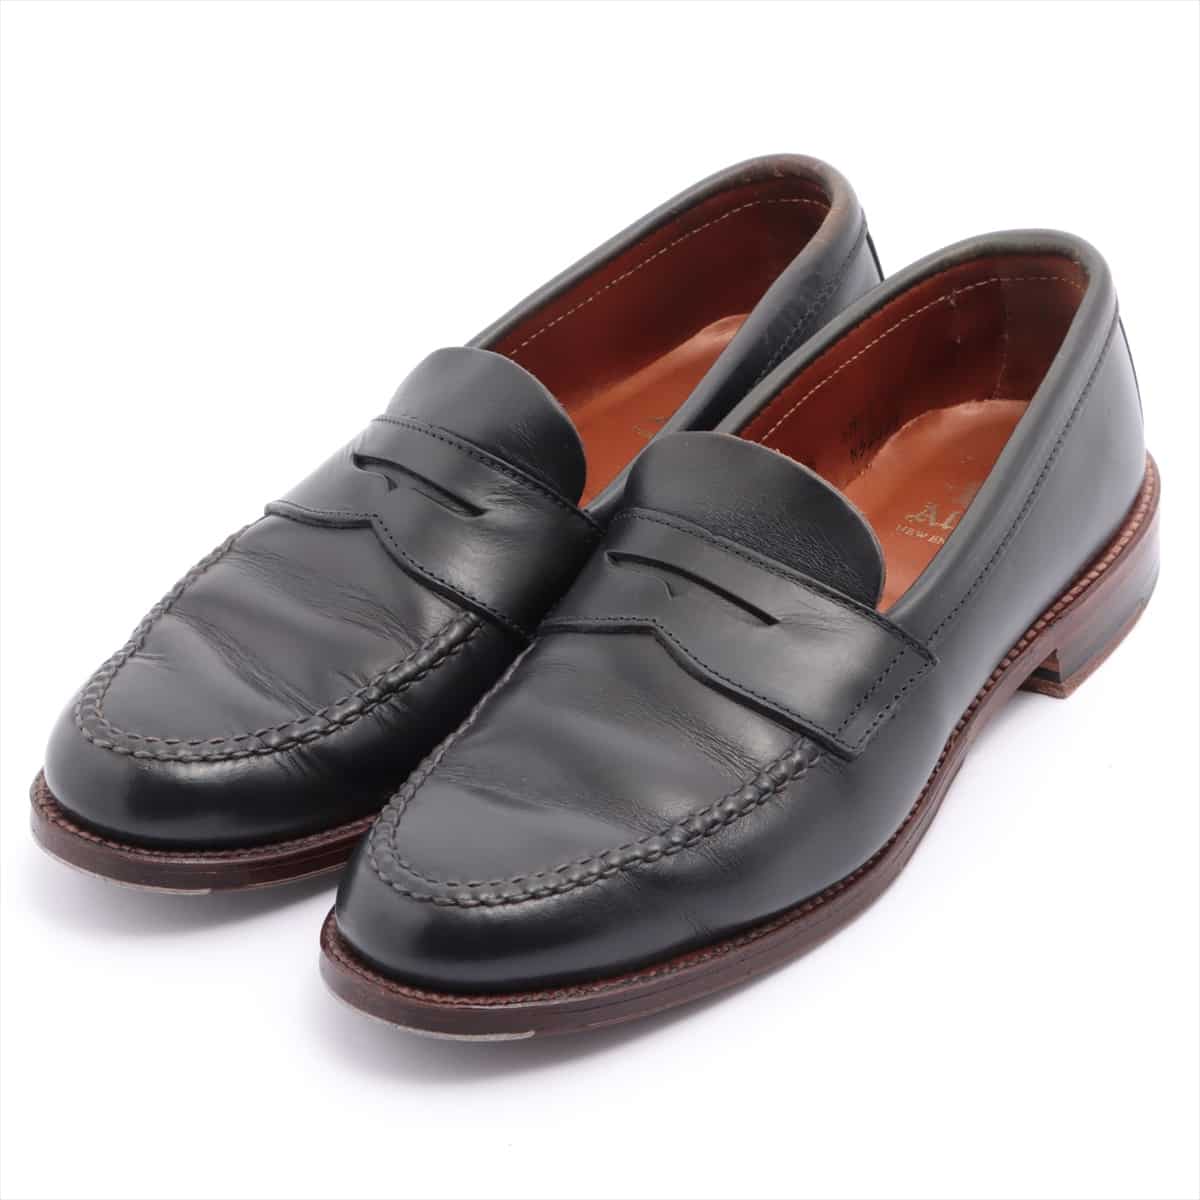 Alden Leather Loafer 7.5 Men's Black 5203